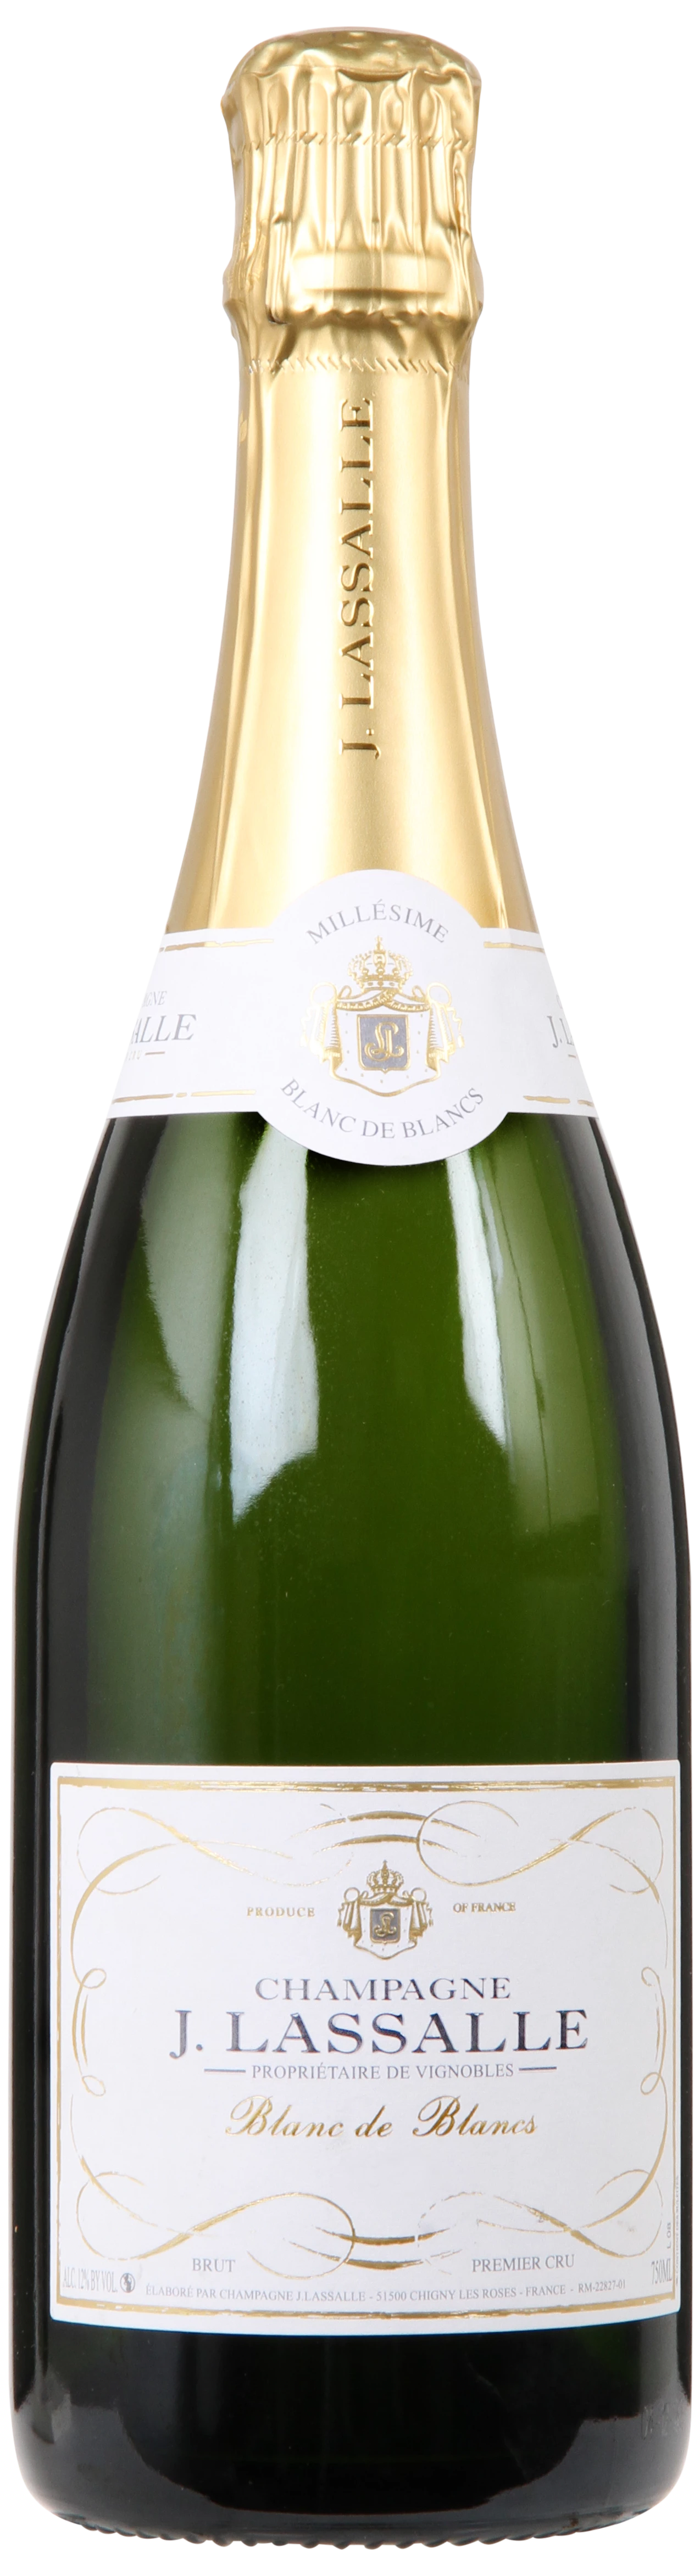 Løgismose Mousserende Lassalle Chigny-les-Roses Champagne Blanc de Blancs Brut Millésimé 2011 - 220908